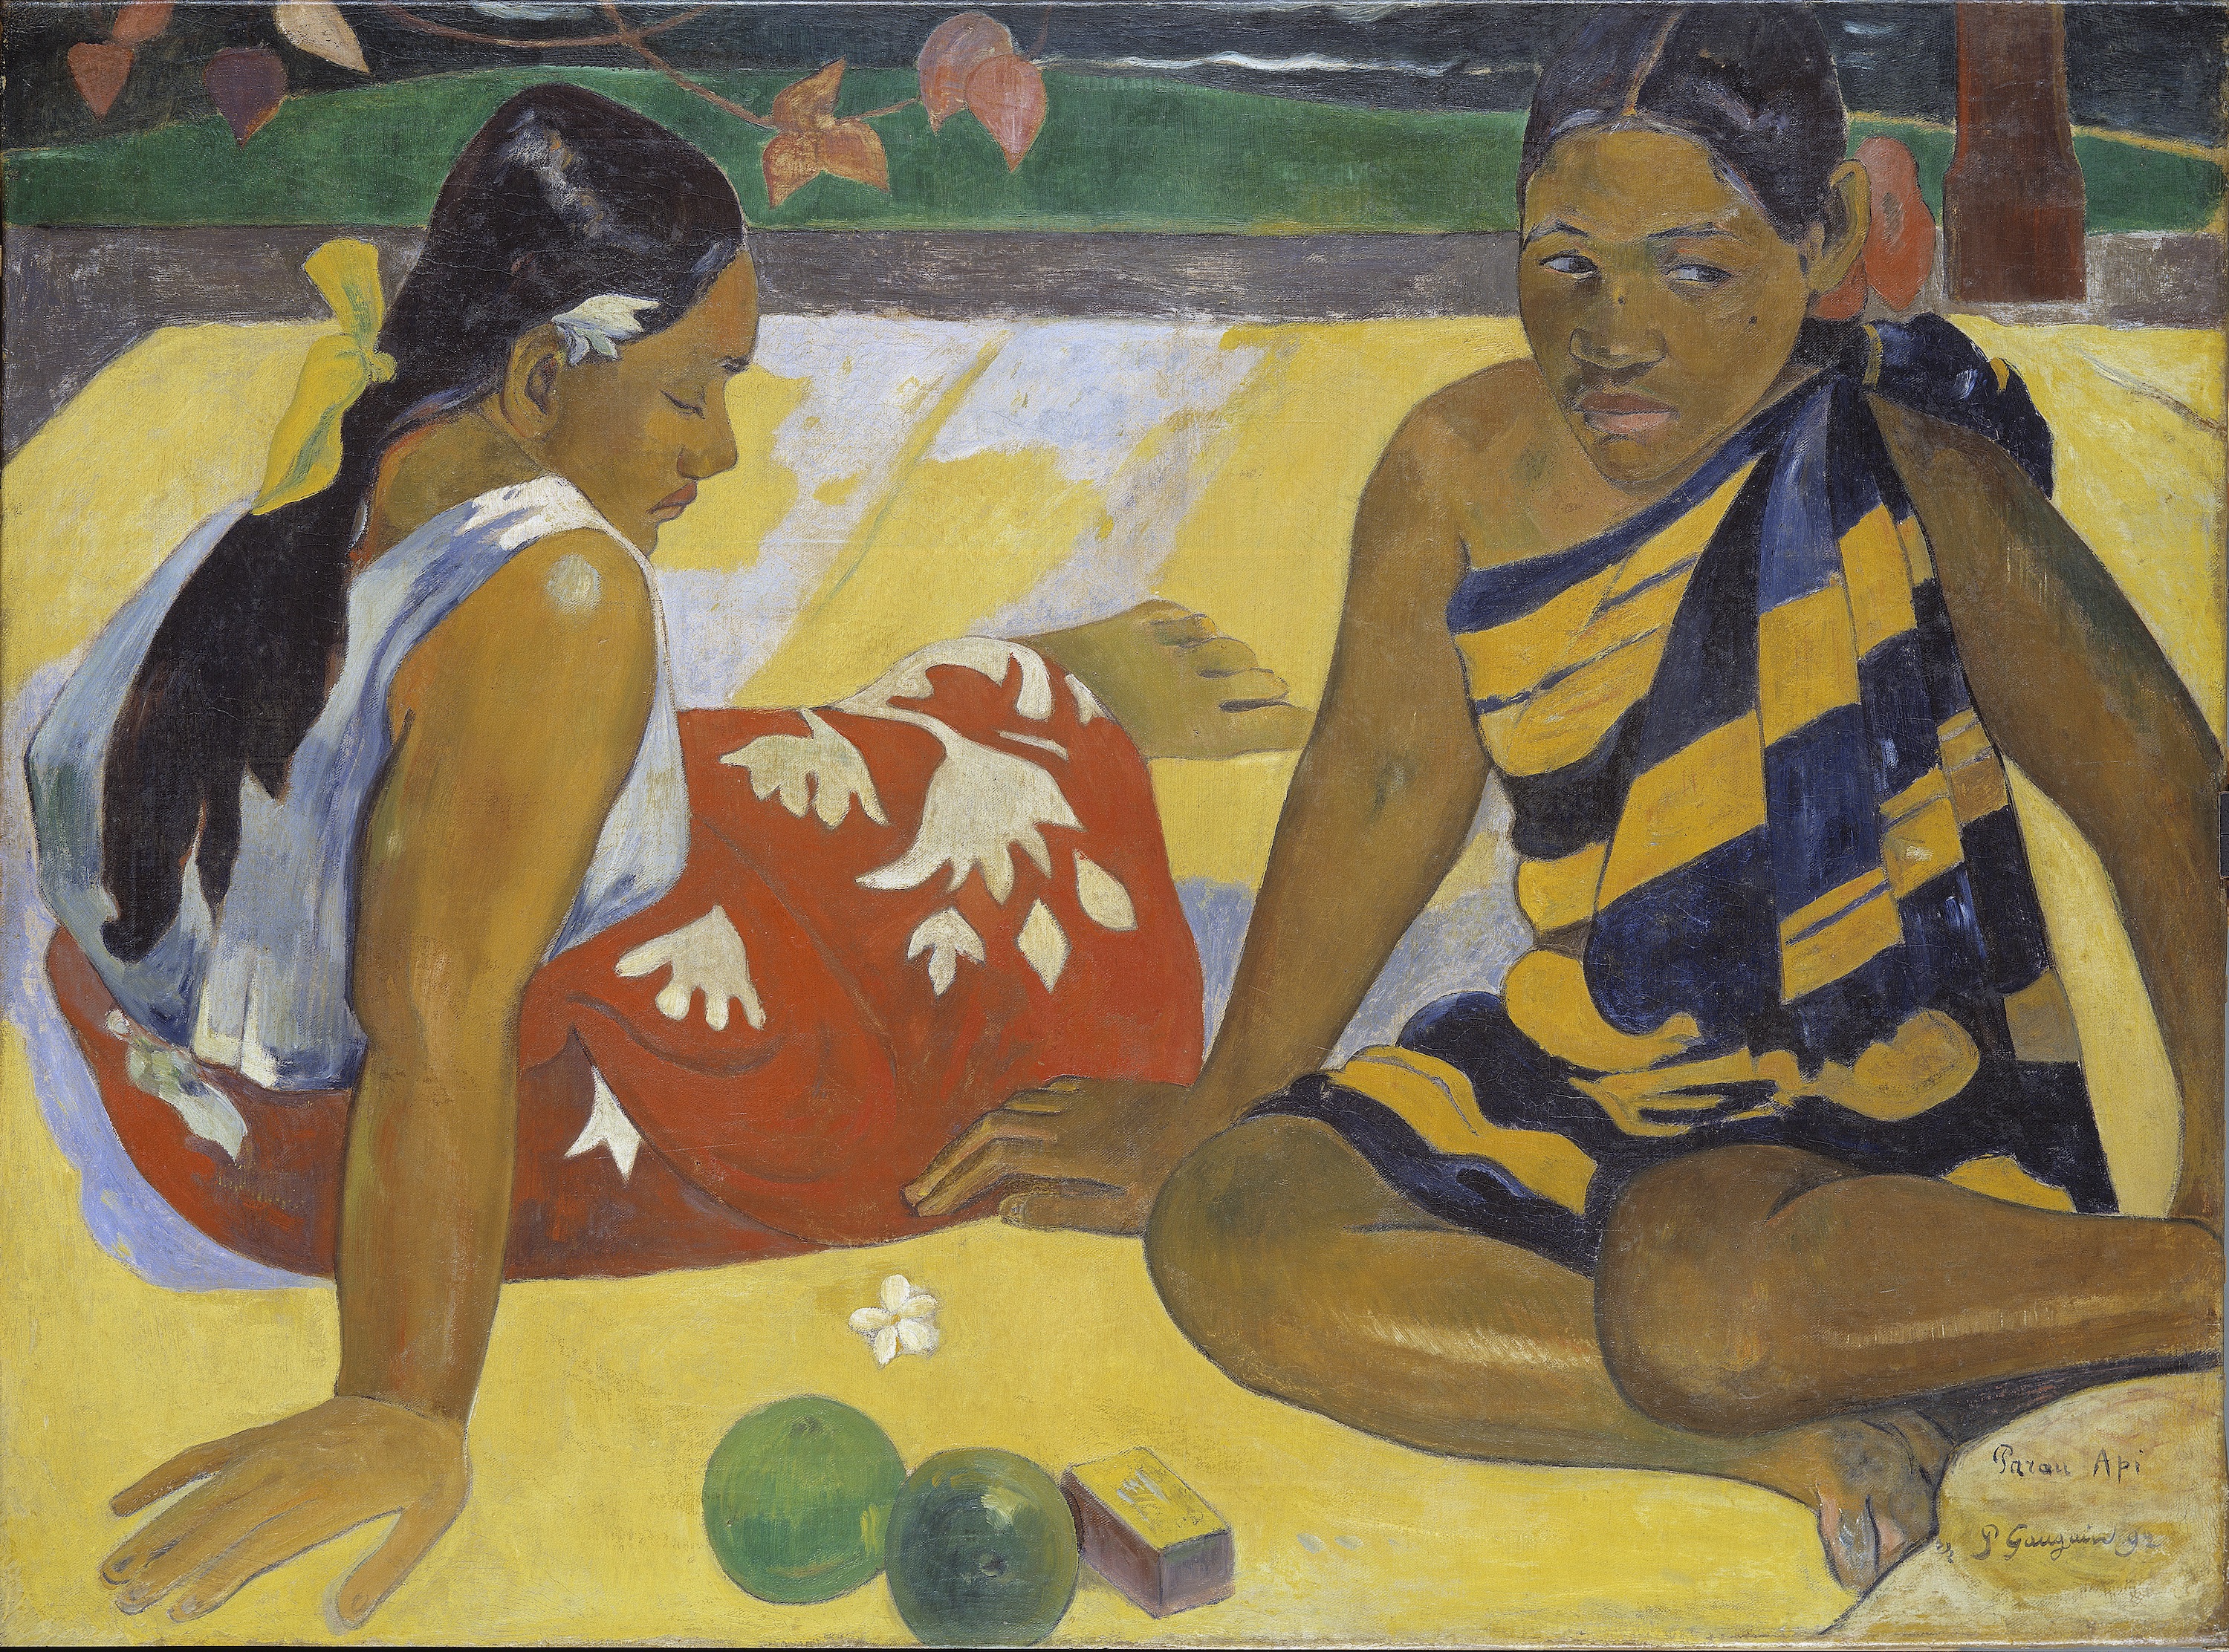 保羅高更.有何新聞 by Paul Gauguin - 1892 - 92 x 67 cm 